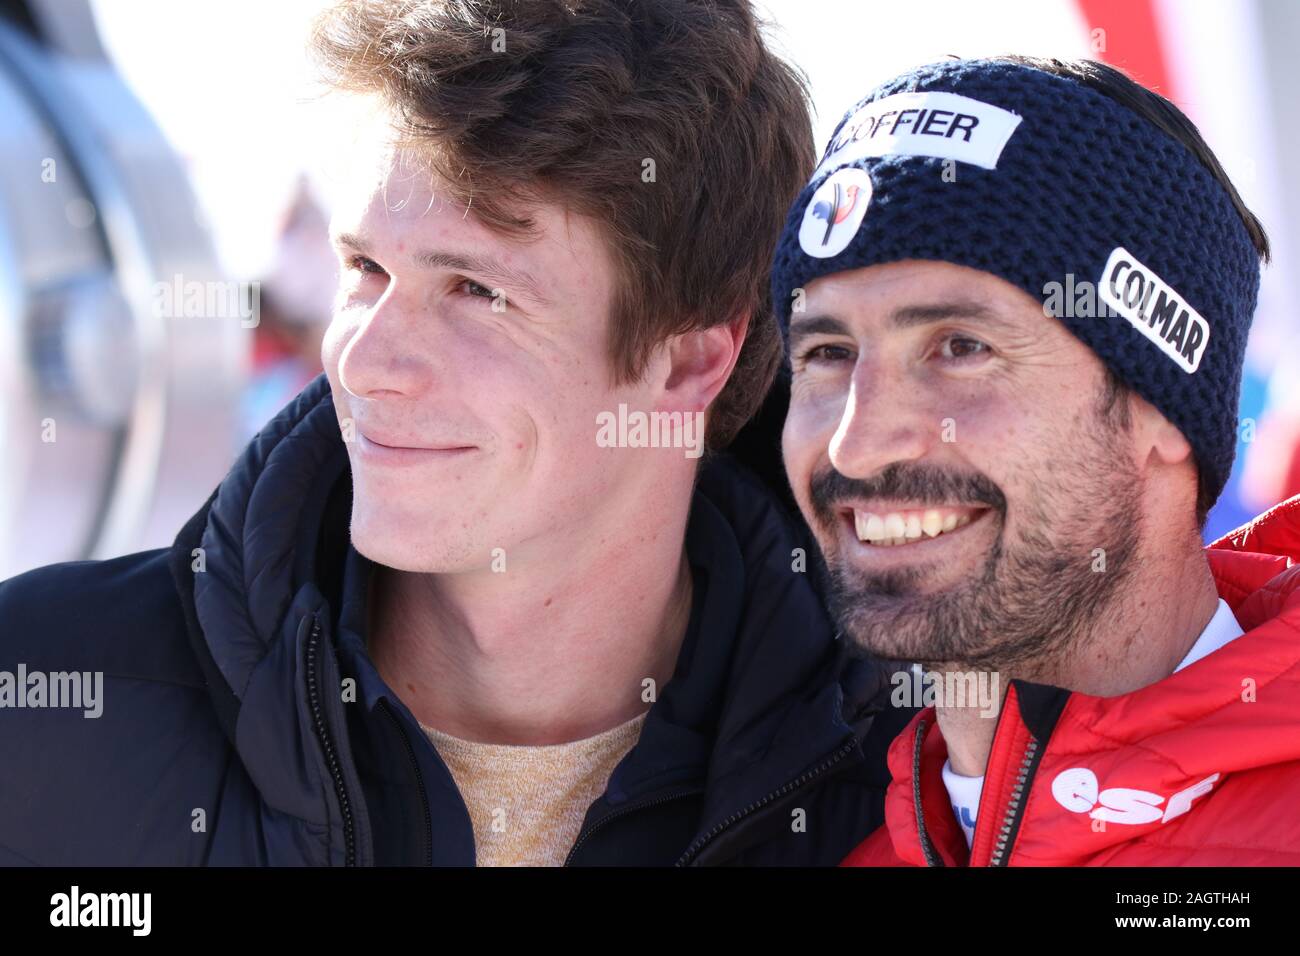 Jean Baptiste Grange und Clément Noel von Frankreich Mitglieder der  französischen Alpen Ski Team nach Val d'Isére Männer slalom 2019  Stockfotografie - Alamy